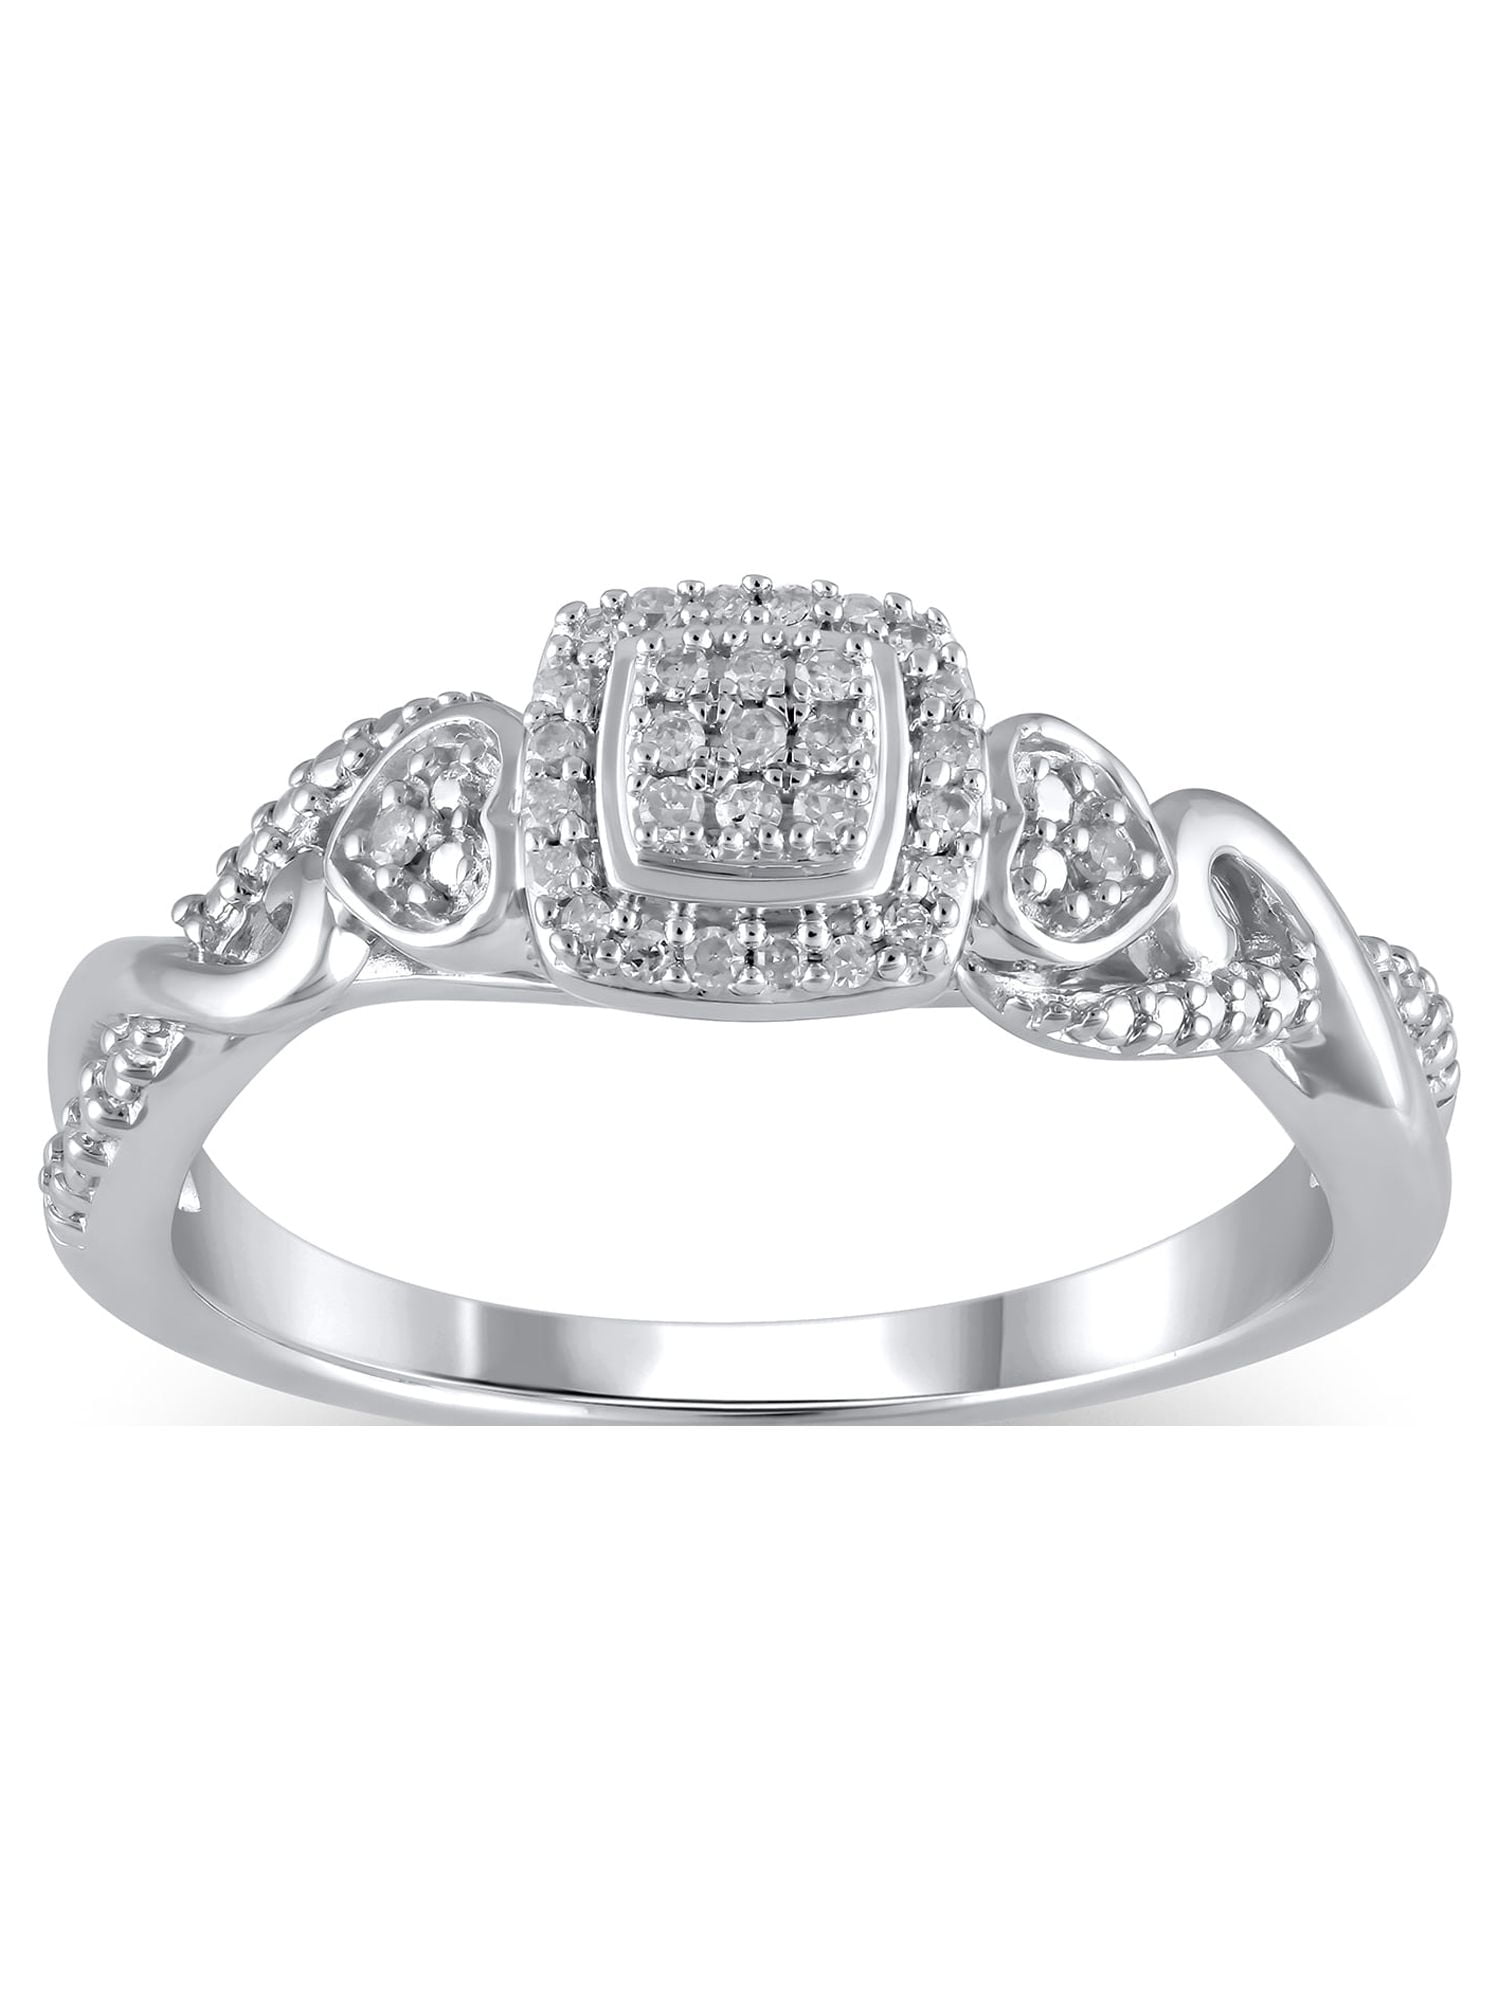 10K White Gold 1/6 Ctw Diamond Heart Ring - Unclaimed Diamonds